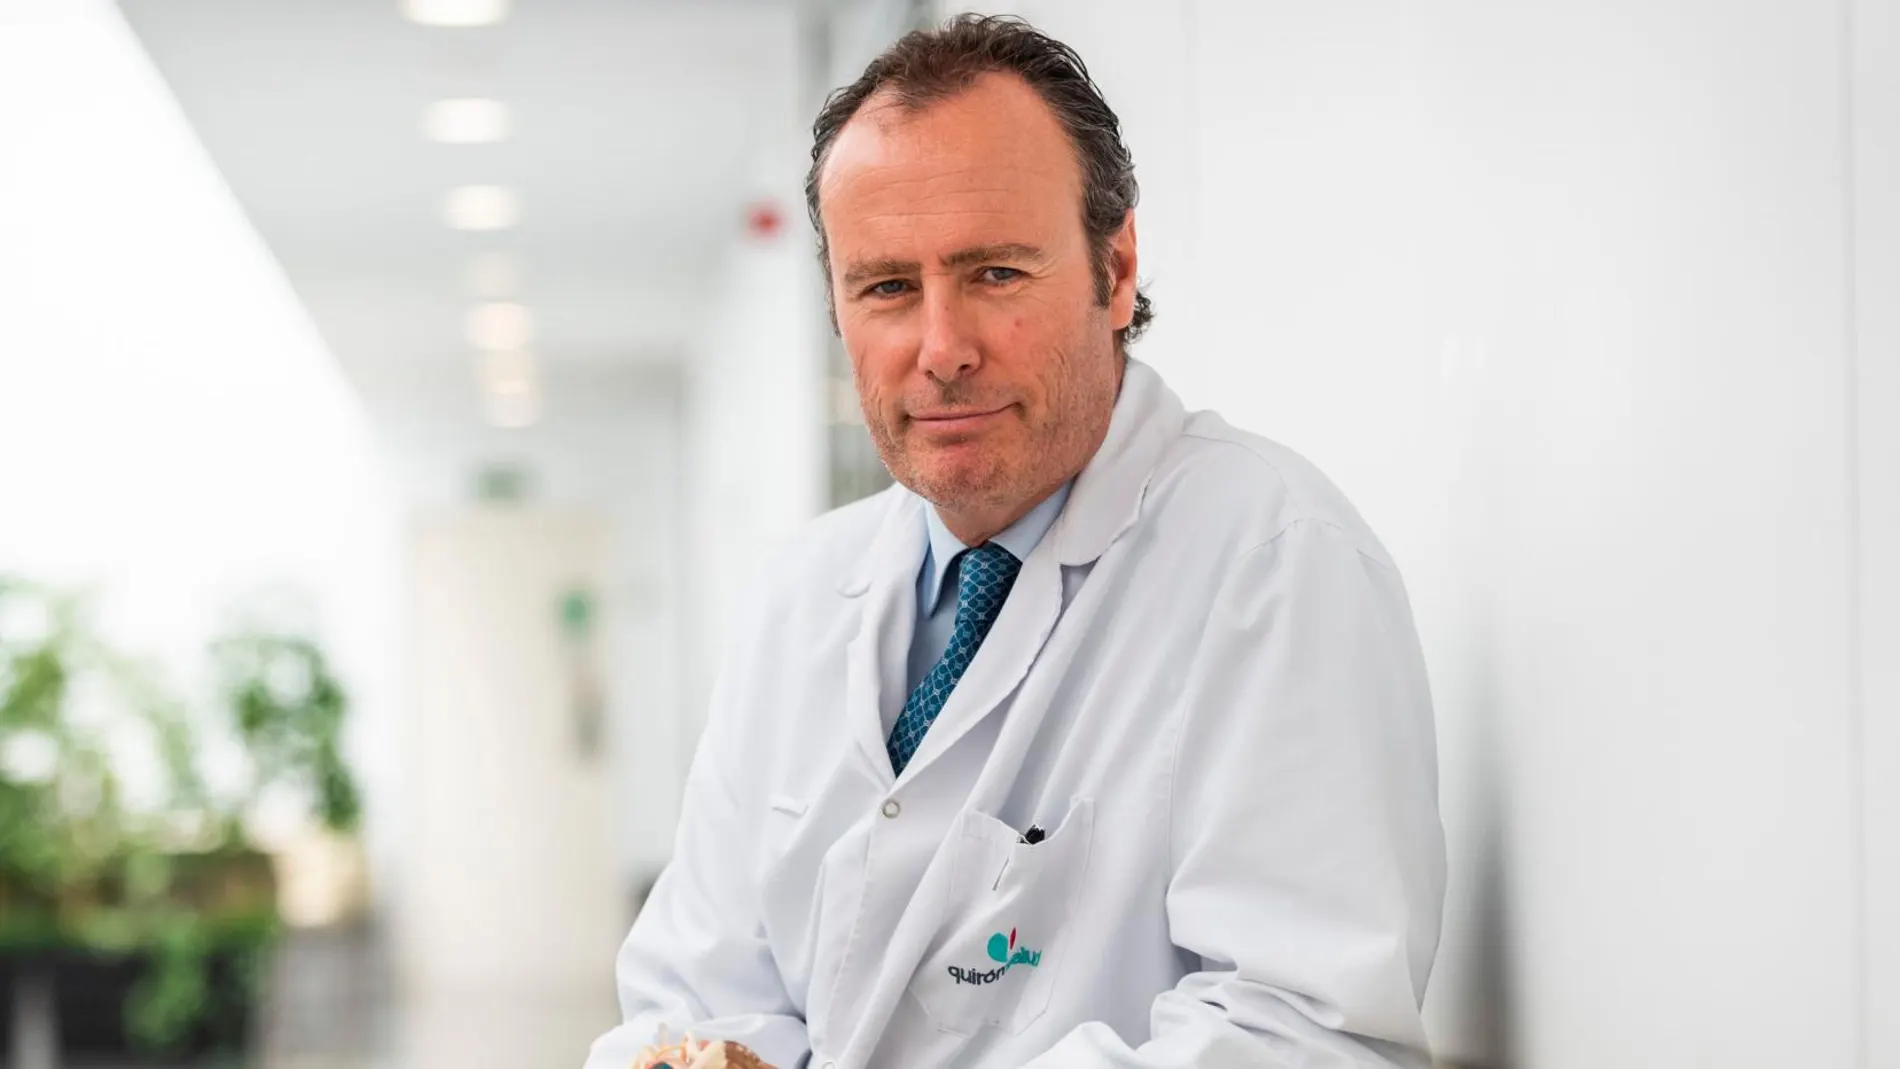 El doctor Pablo Clavel, en la clínica que lleva su nombre, un referente internacional en el abordaje anterior lumbar, una técnica para operar lesiones del disco menos invasiva que reduce el tiempo de recuperación